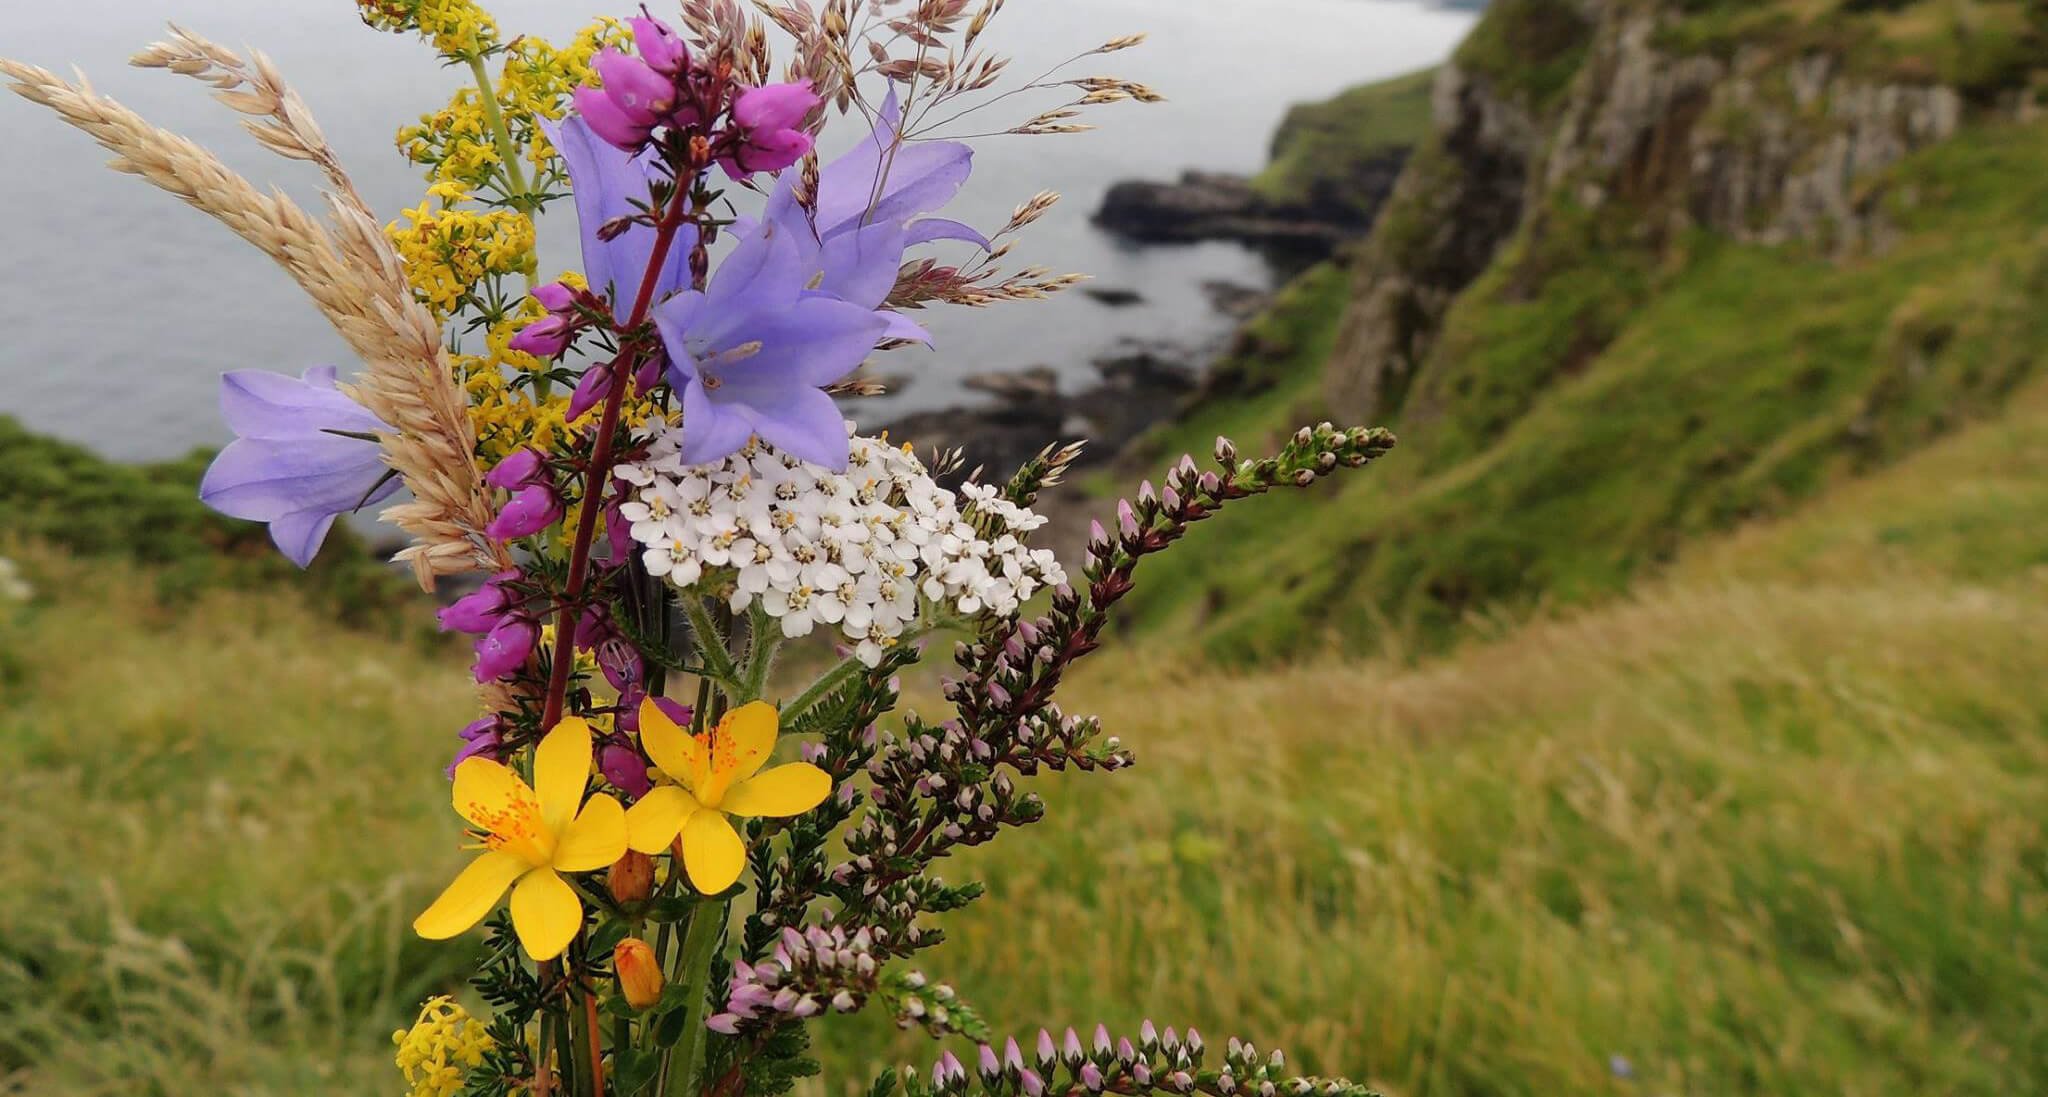 Spring wildflower bunch in Irish landscape